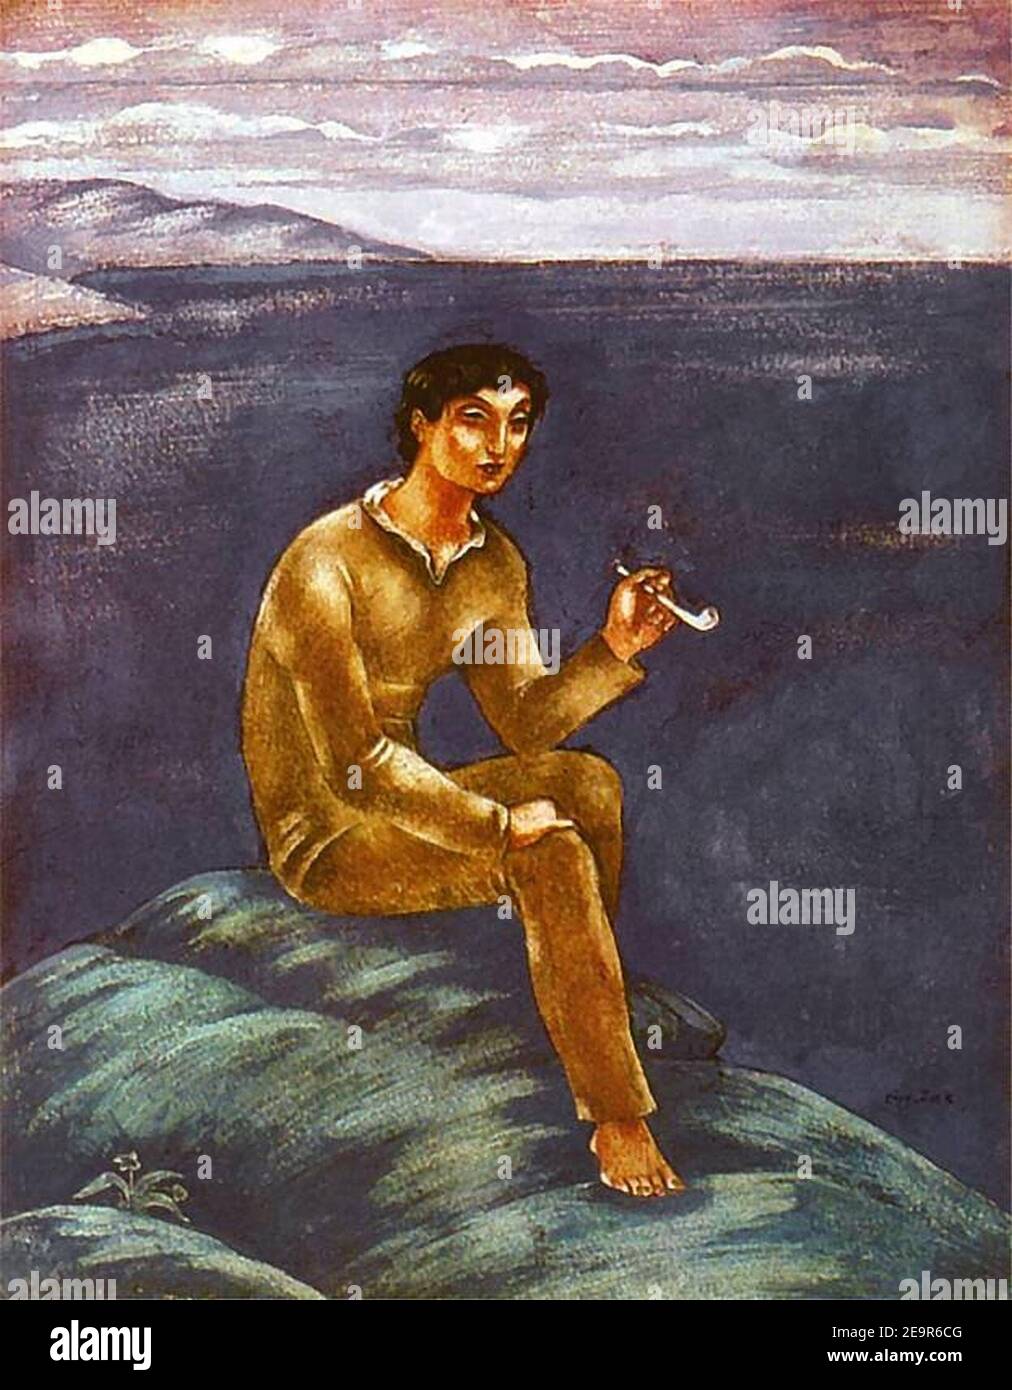 Młody rybak z fajką. Stock Photo